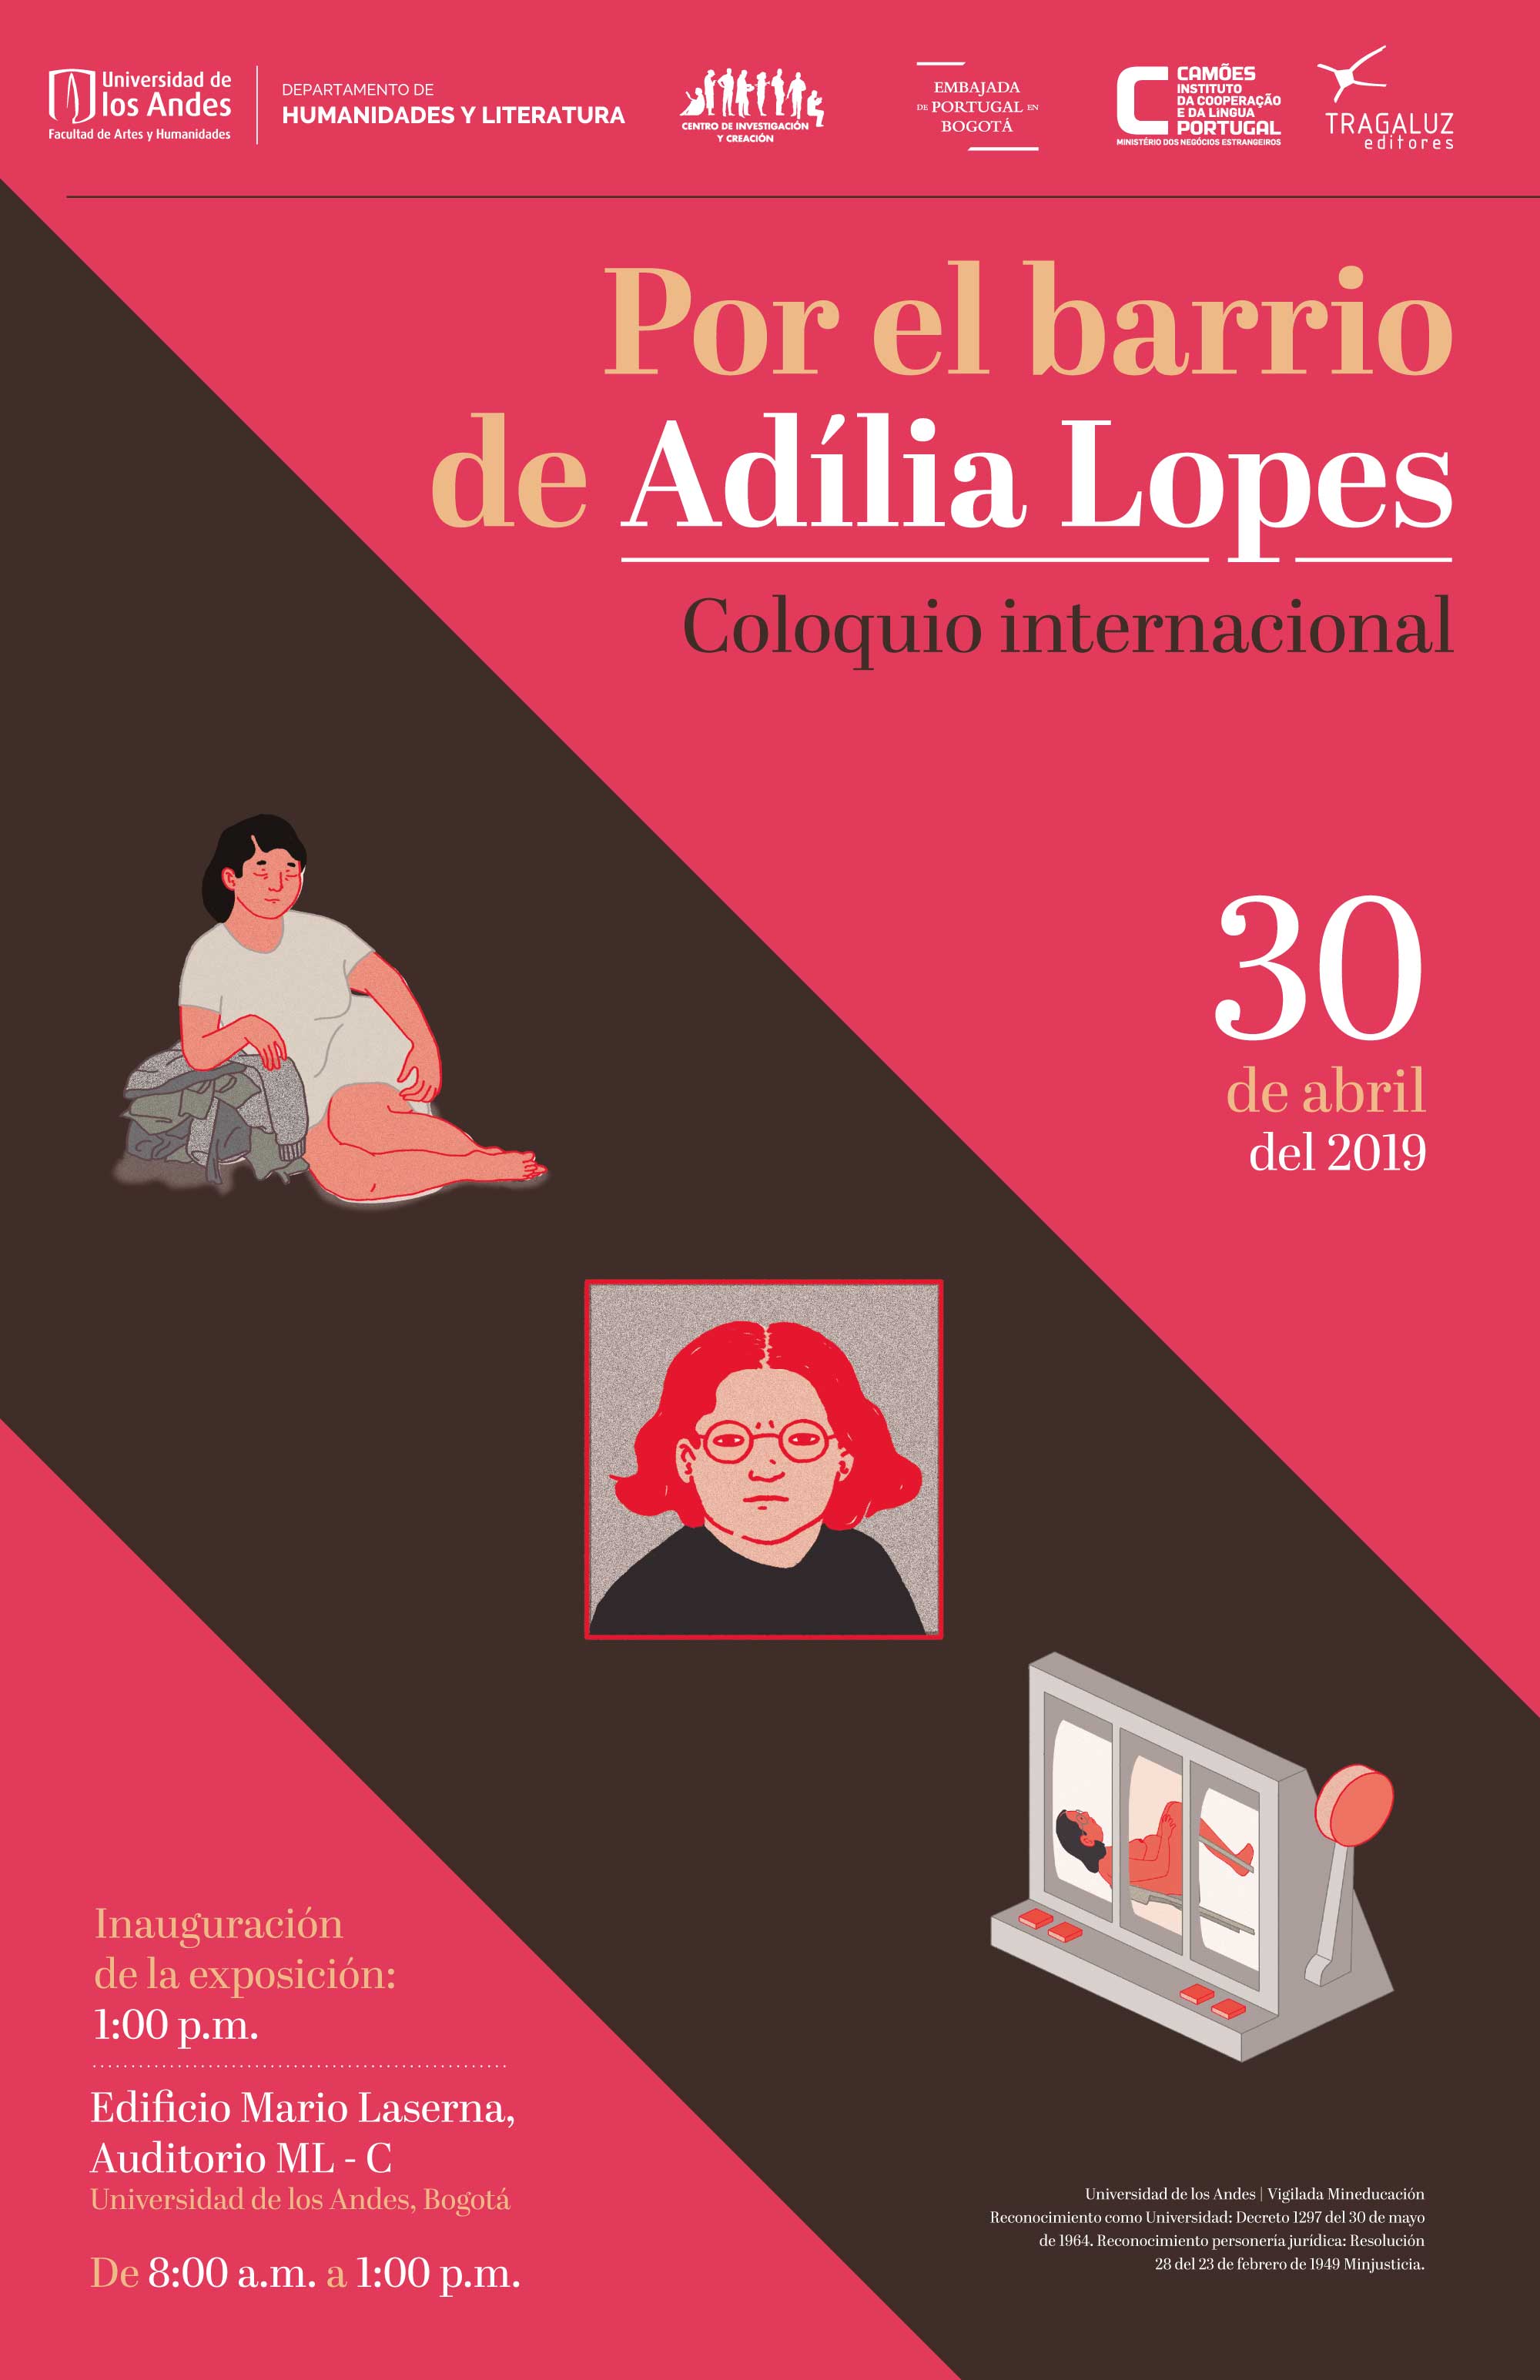 Coloquio internacional Adília Lopes